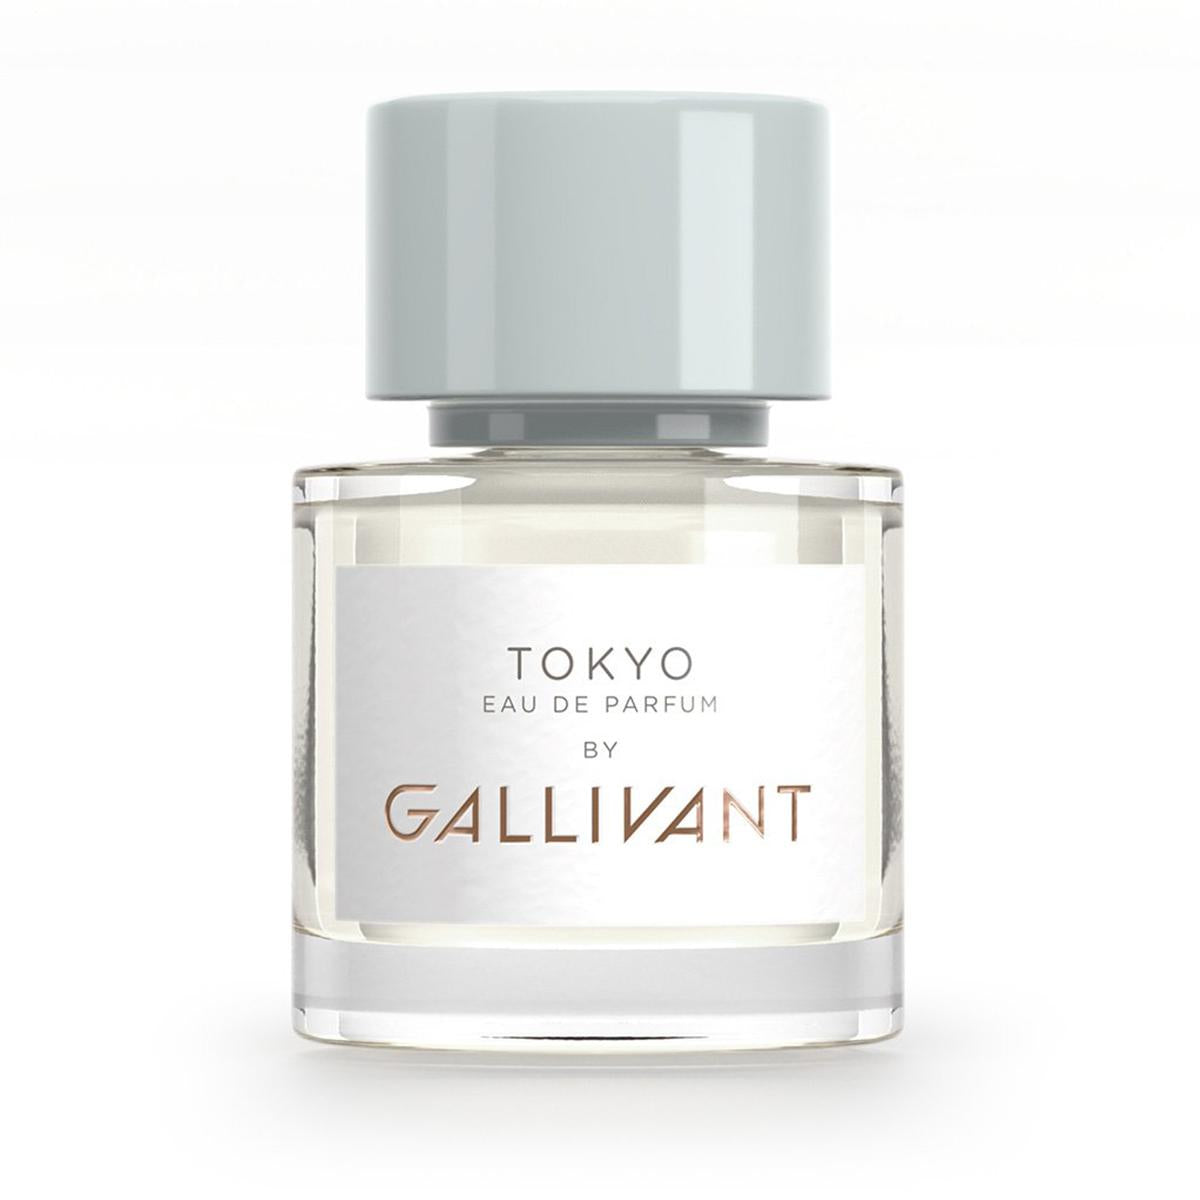 Primary image of Tokyo Eau De Parfum